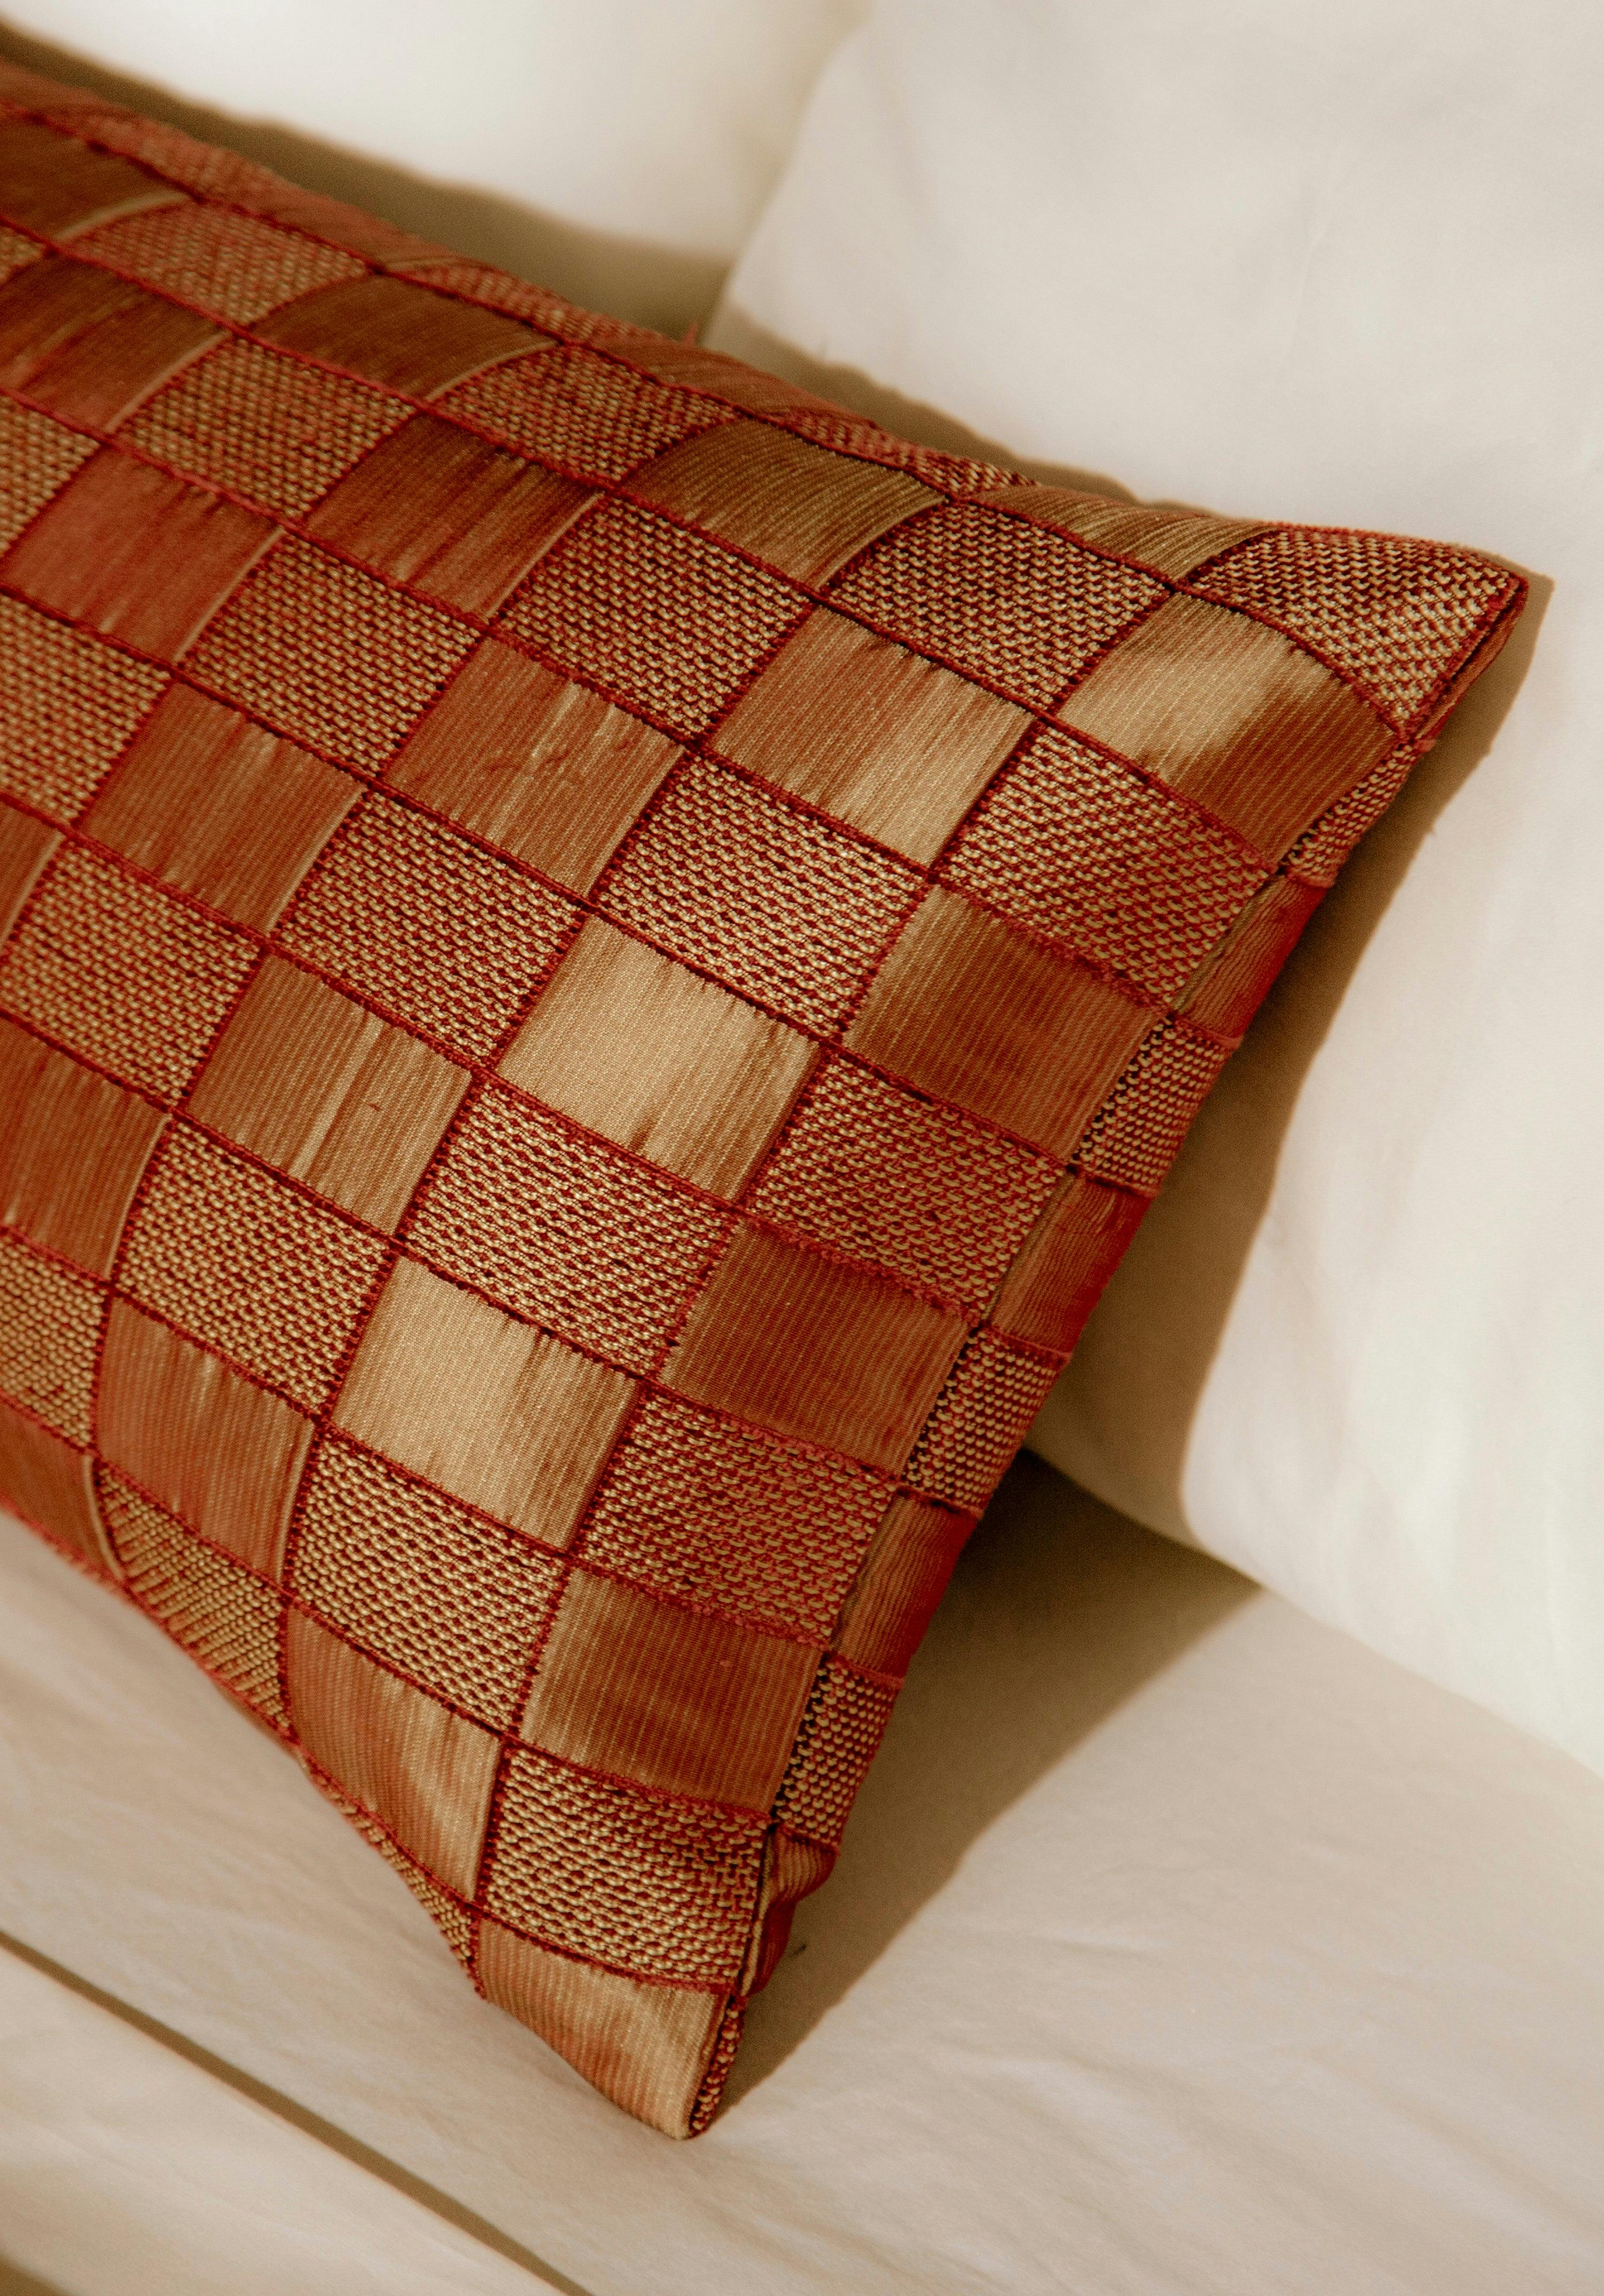 Louis Vuitton» Throw Pillow by Lois Sana